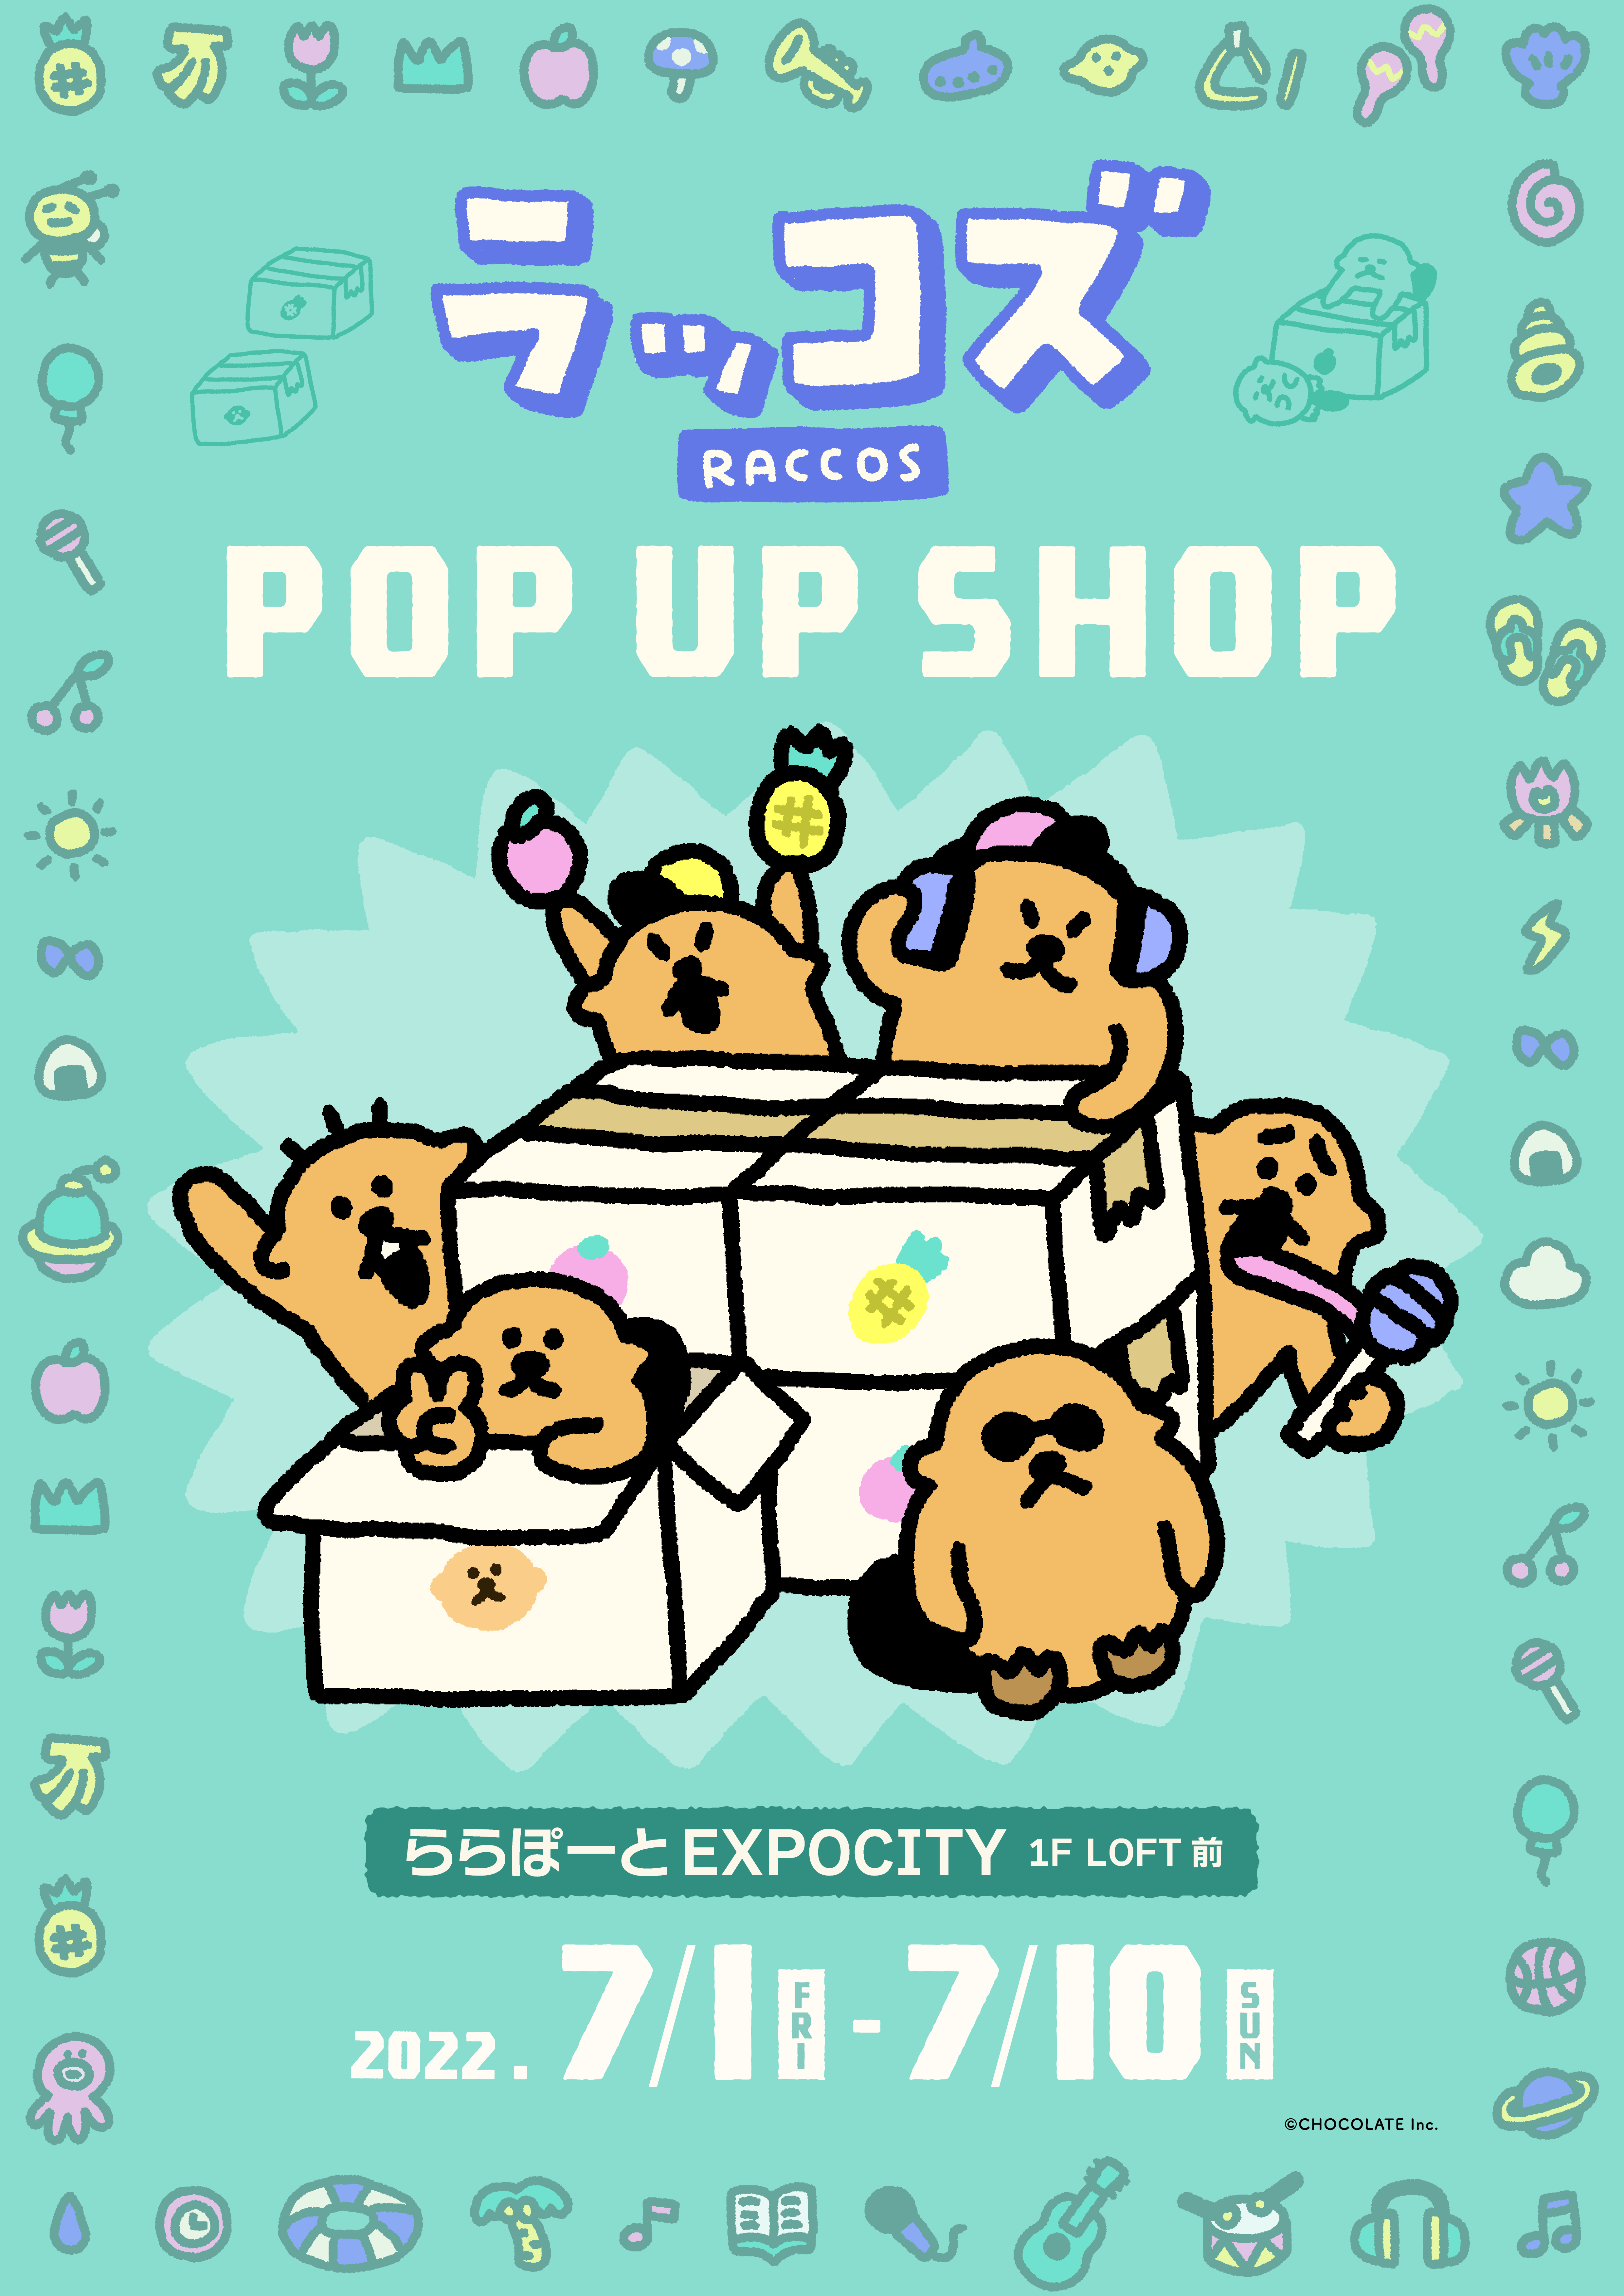 ラッコズ POP UP SHOP ららぽーとEXPOCITY 7/2(土)